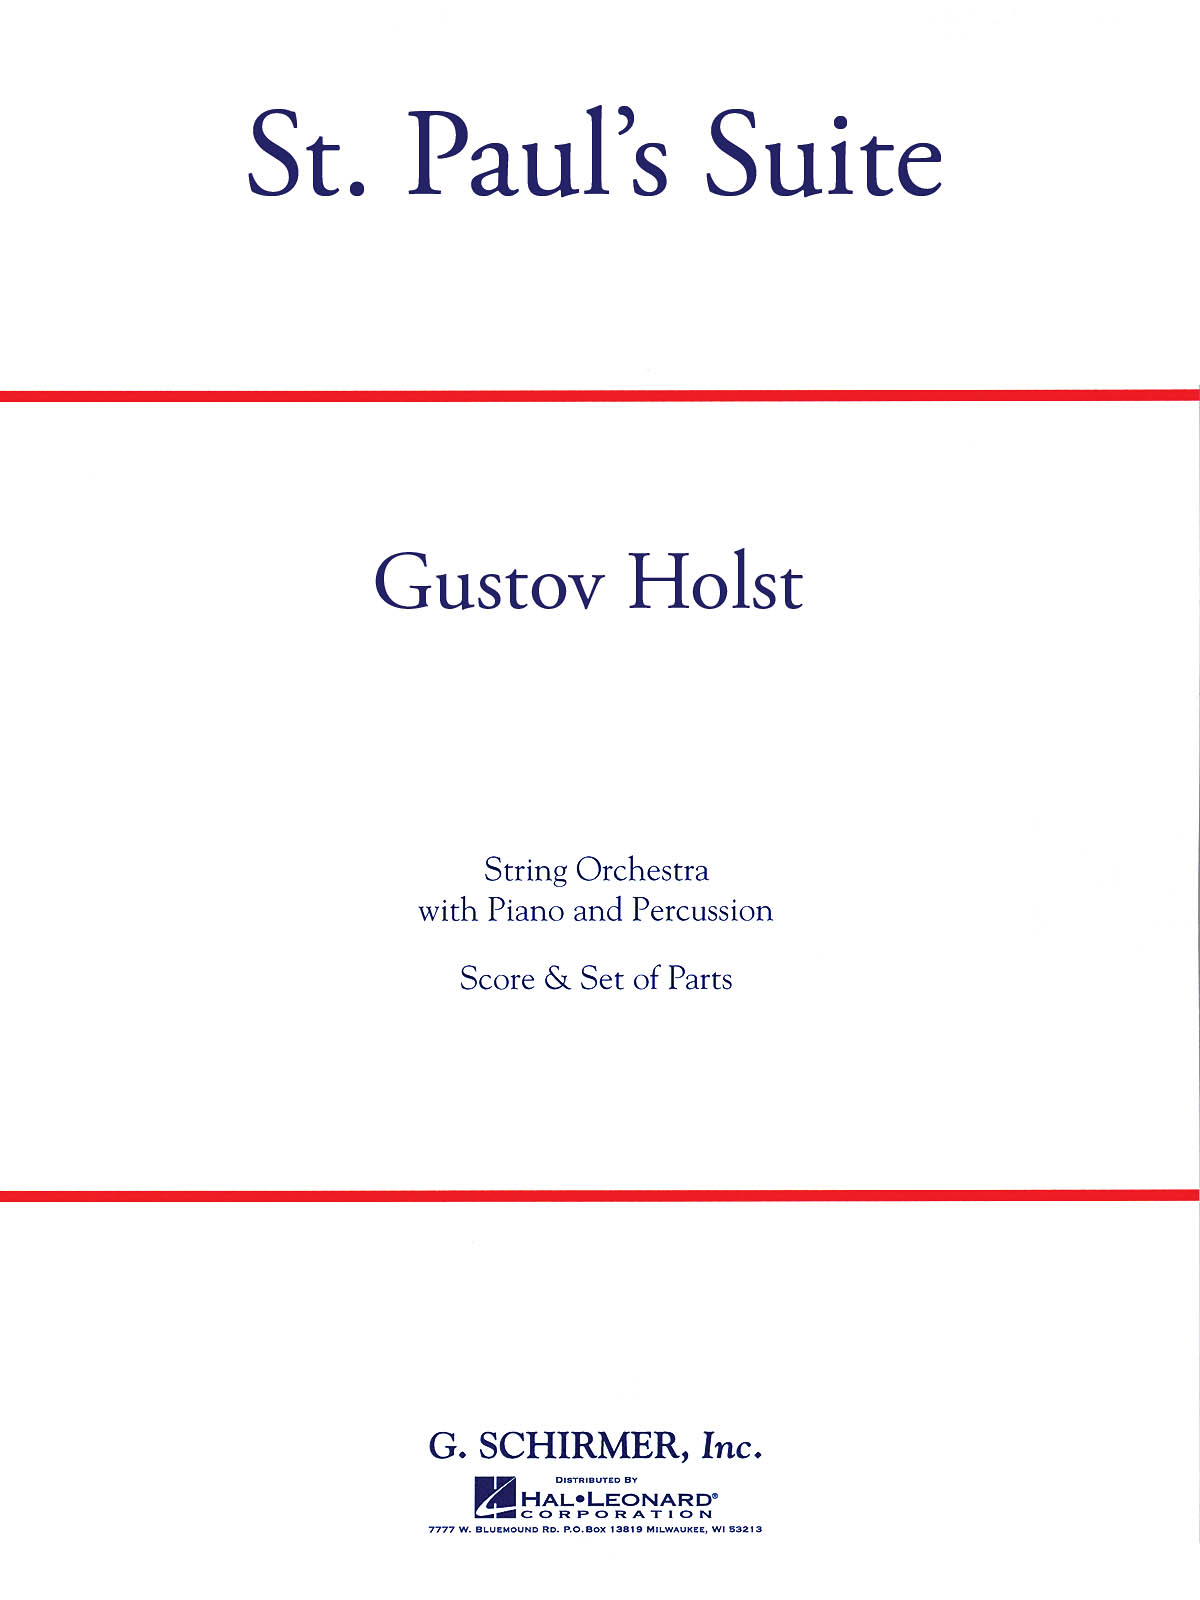 Gustav Holst: St. Paul's Suite: Orchestra: Instrumental Work